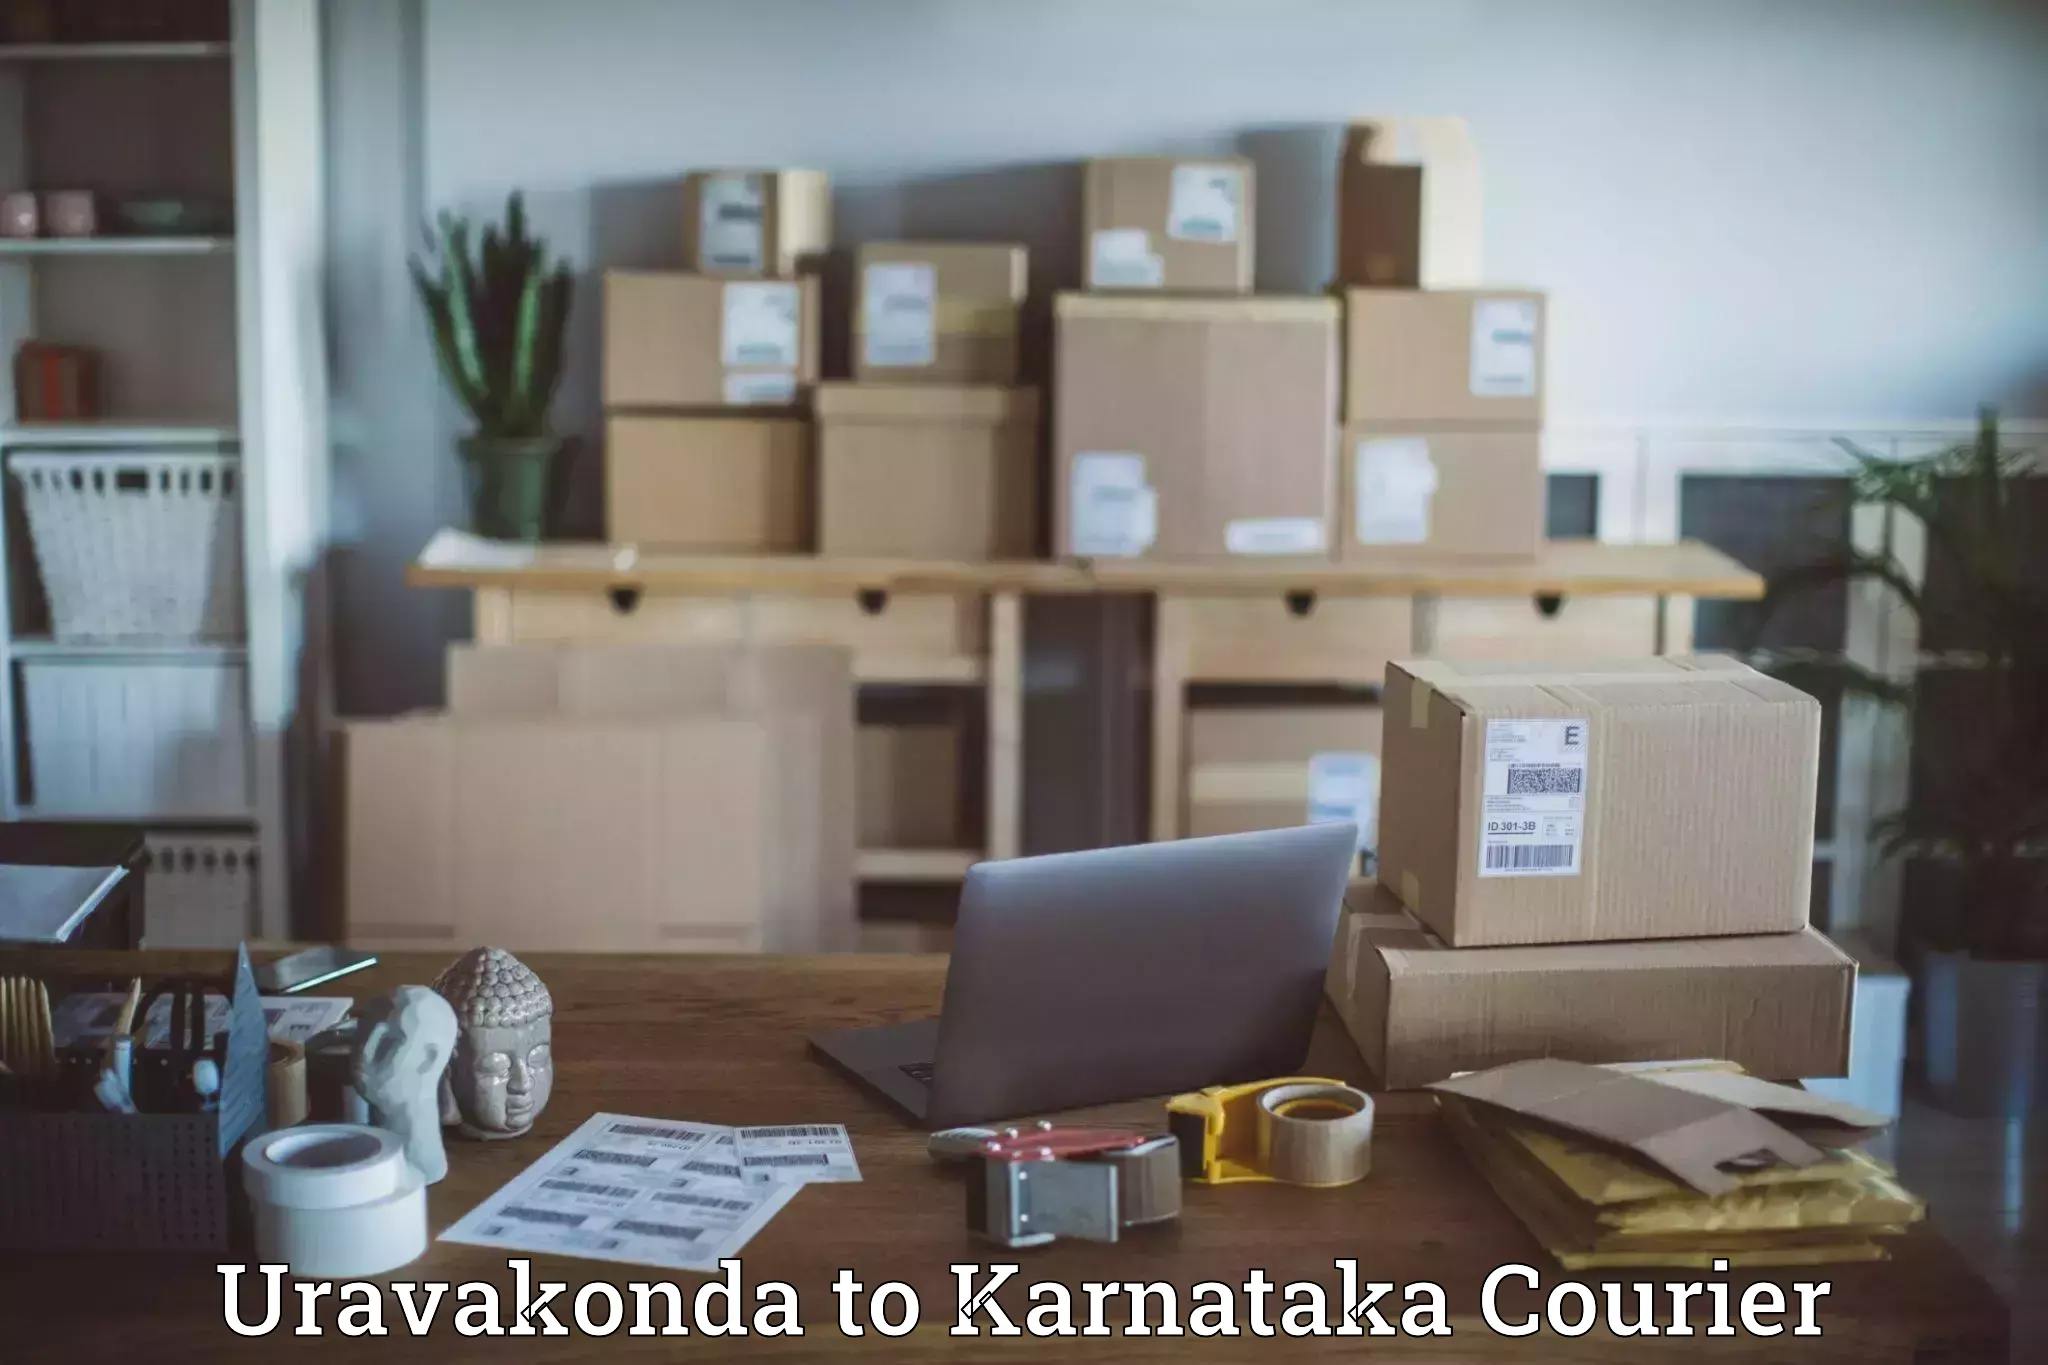 User-friendly delivery service in Uravakonda to Ankola